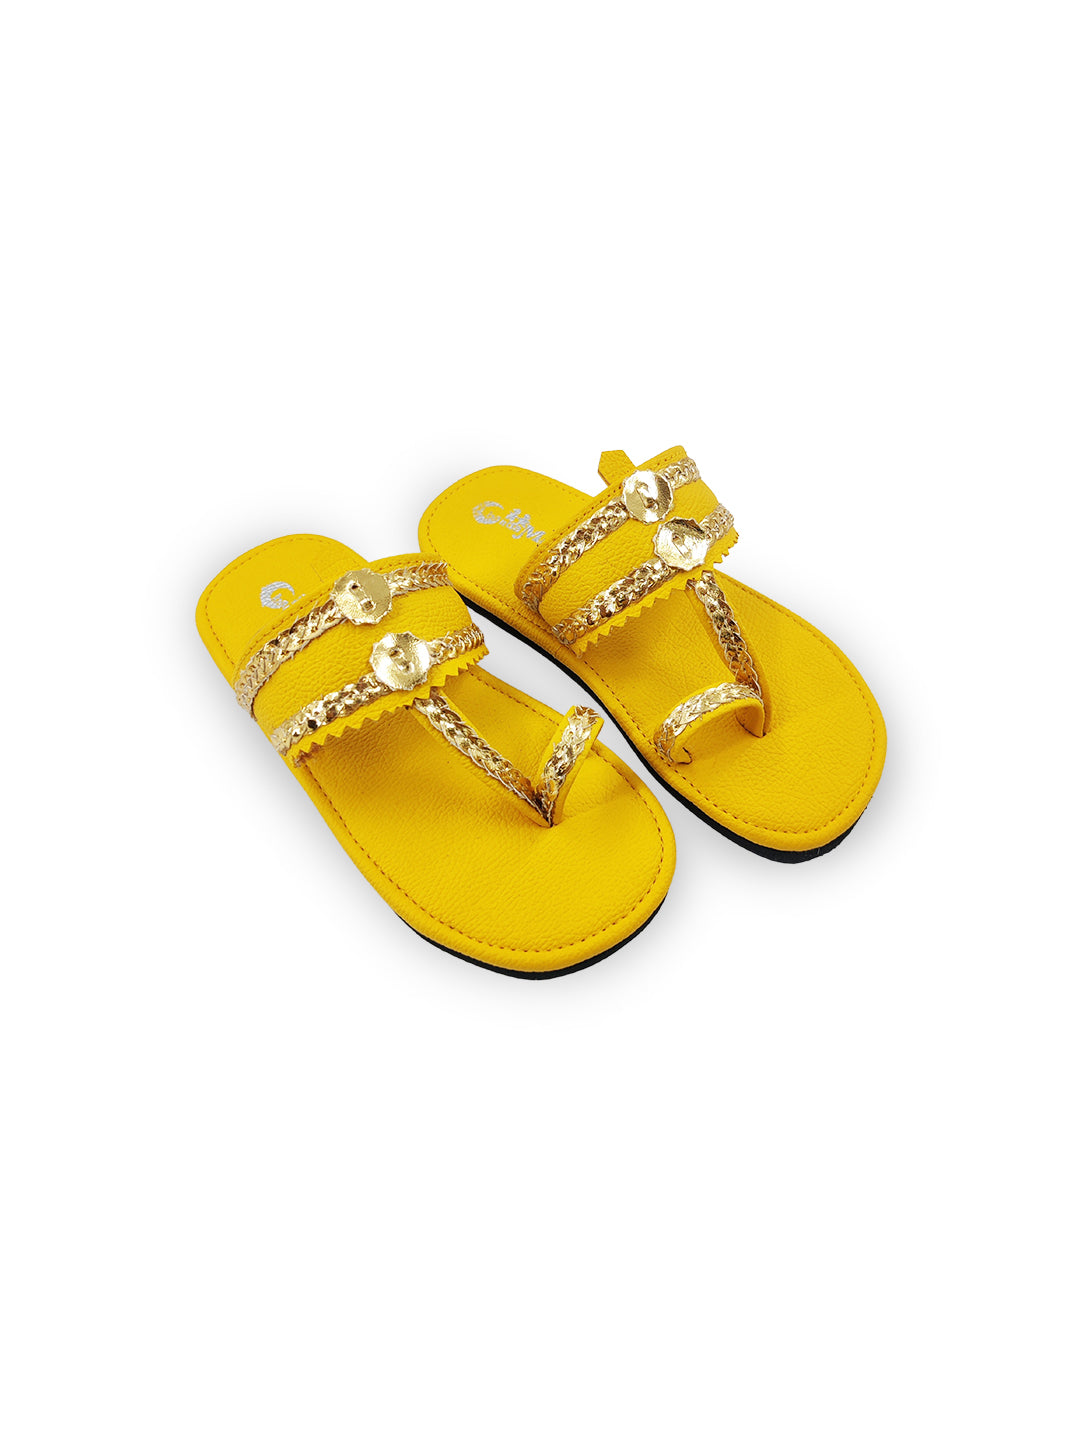  Girls Yellow Ethnic kolhapuri Comfort Sandal